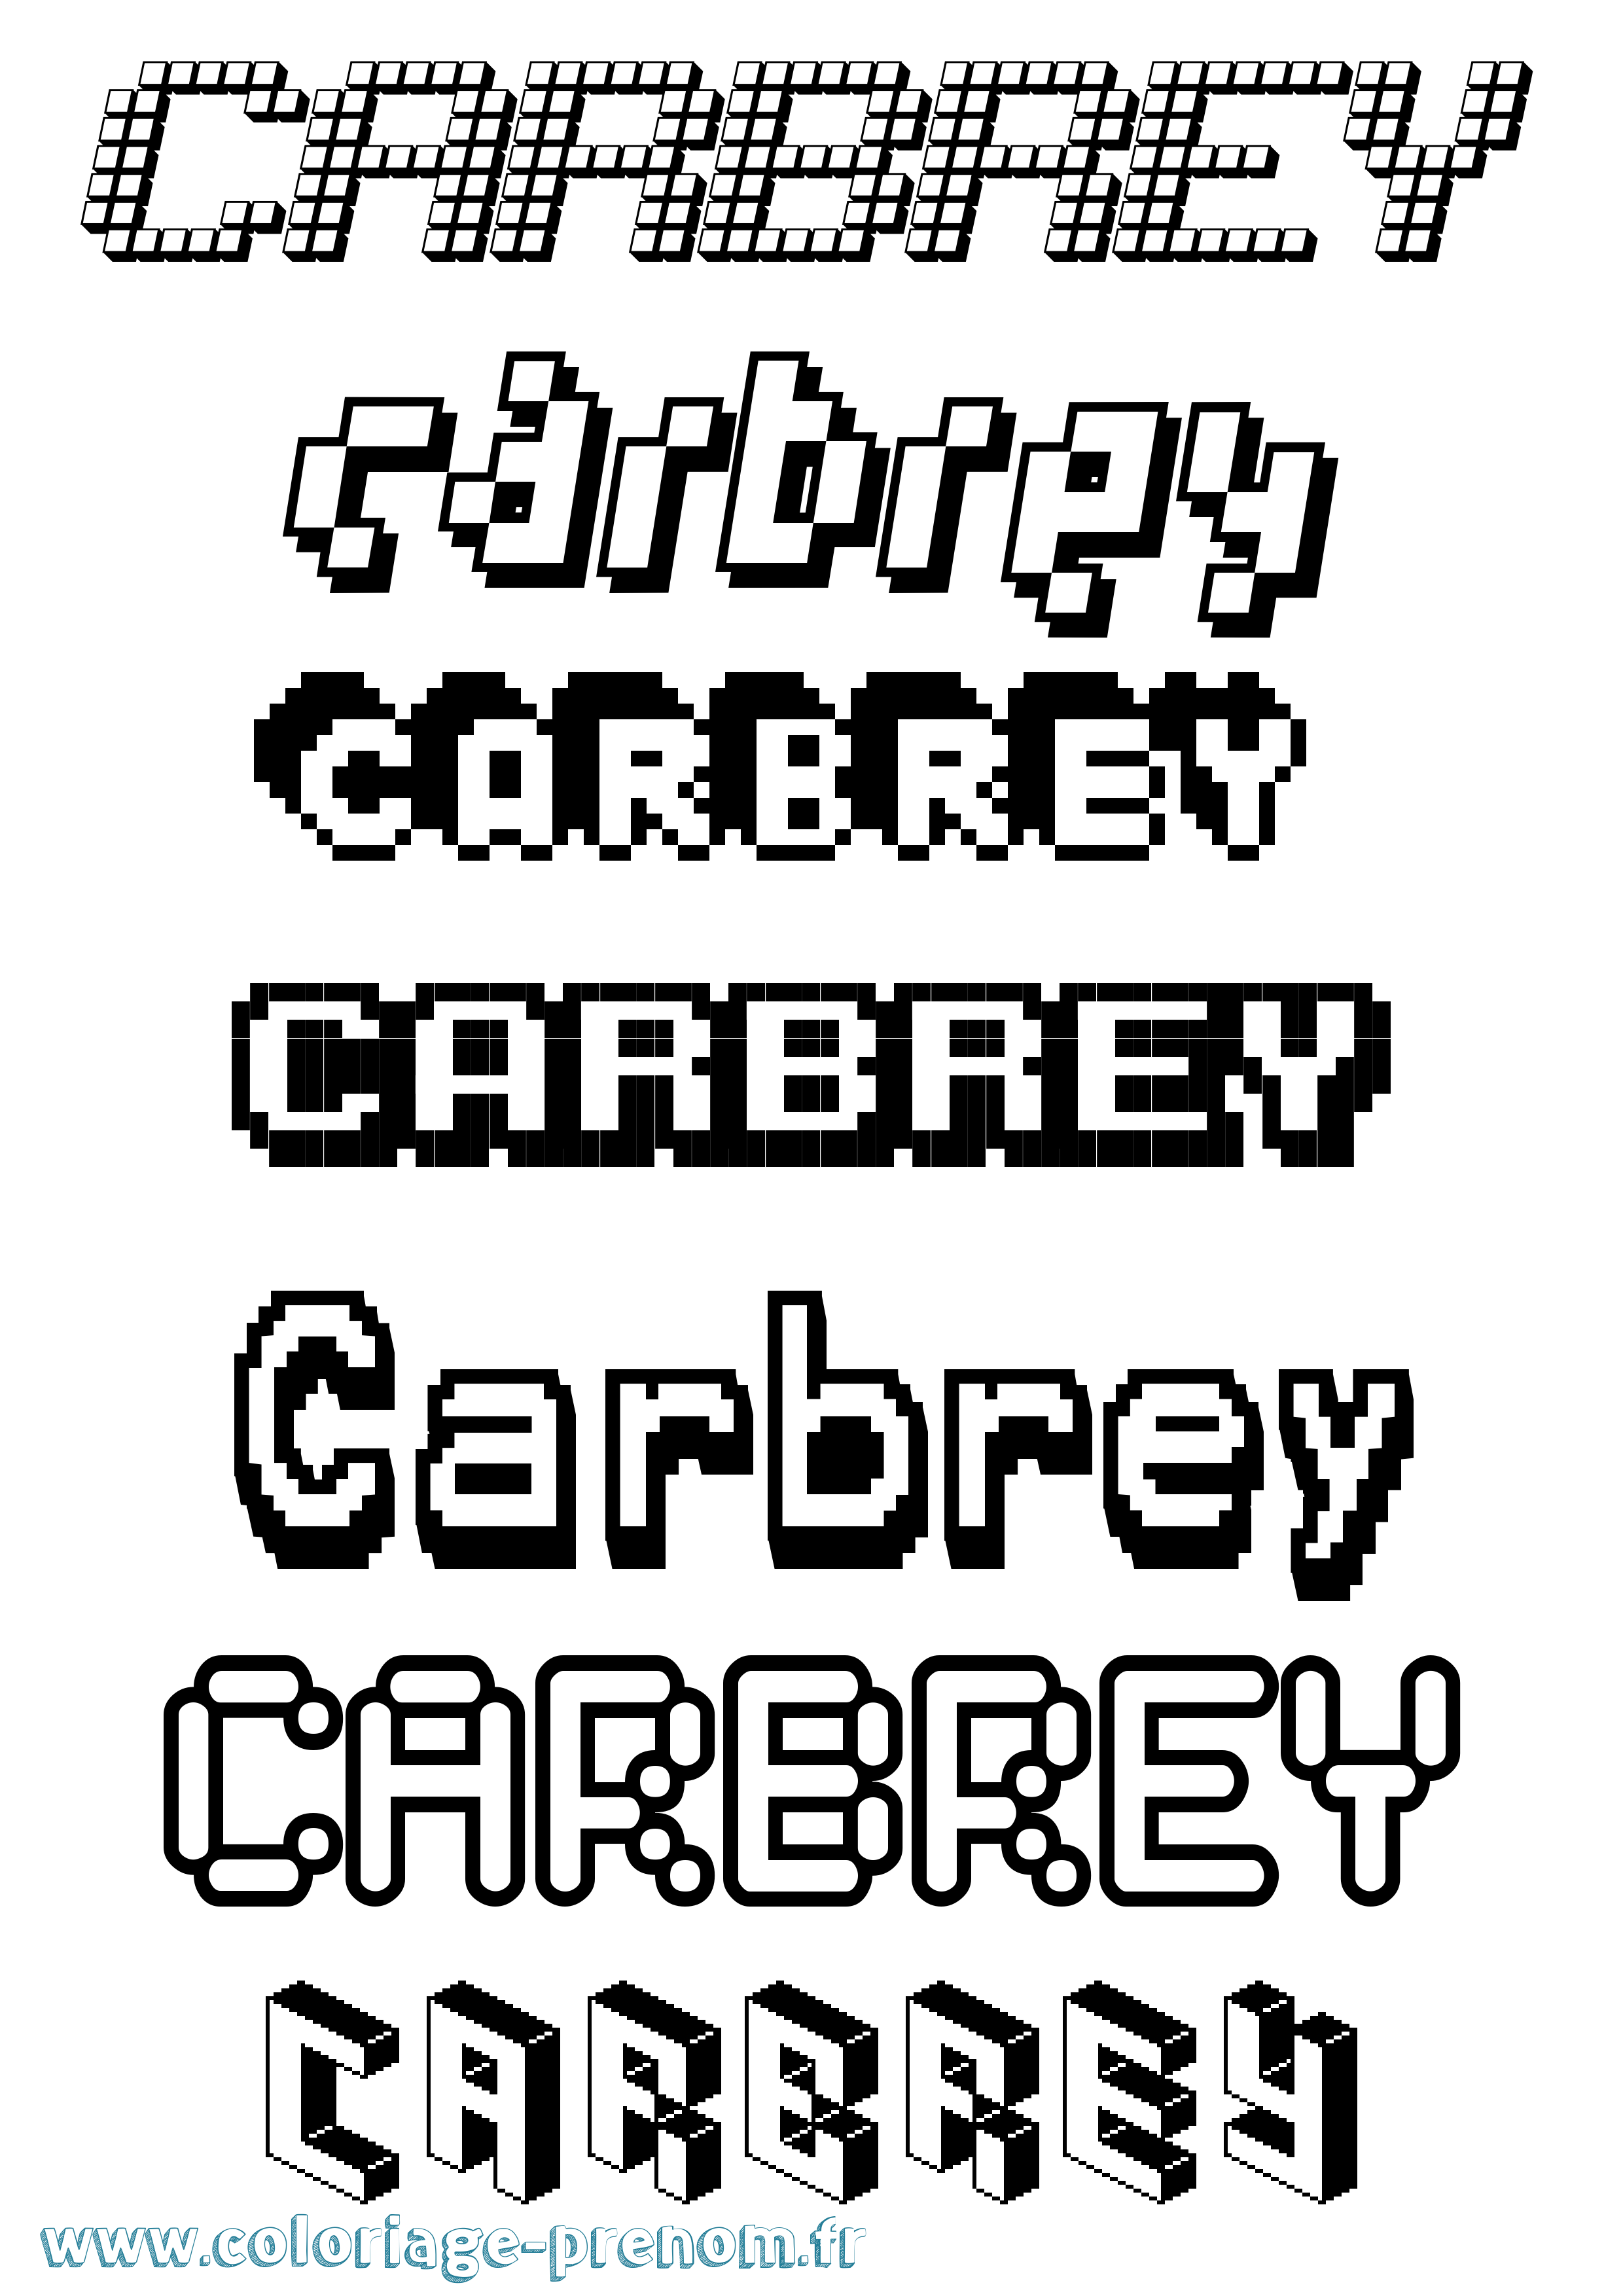 Coloriage prénom Carbrey Pixel